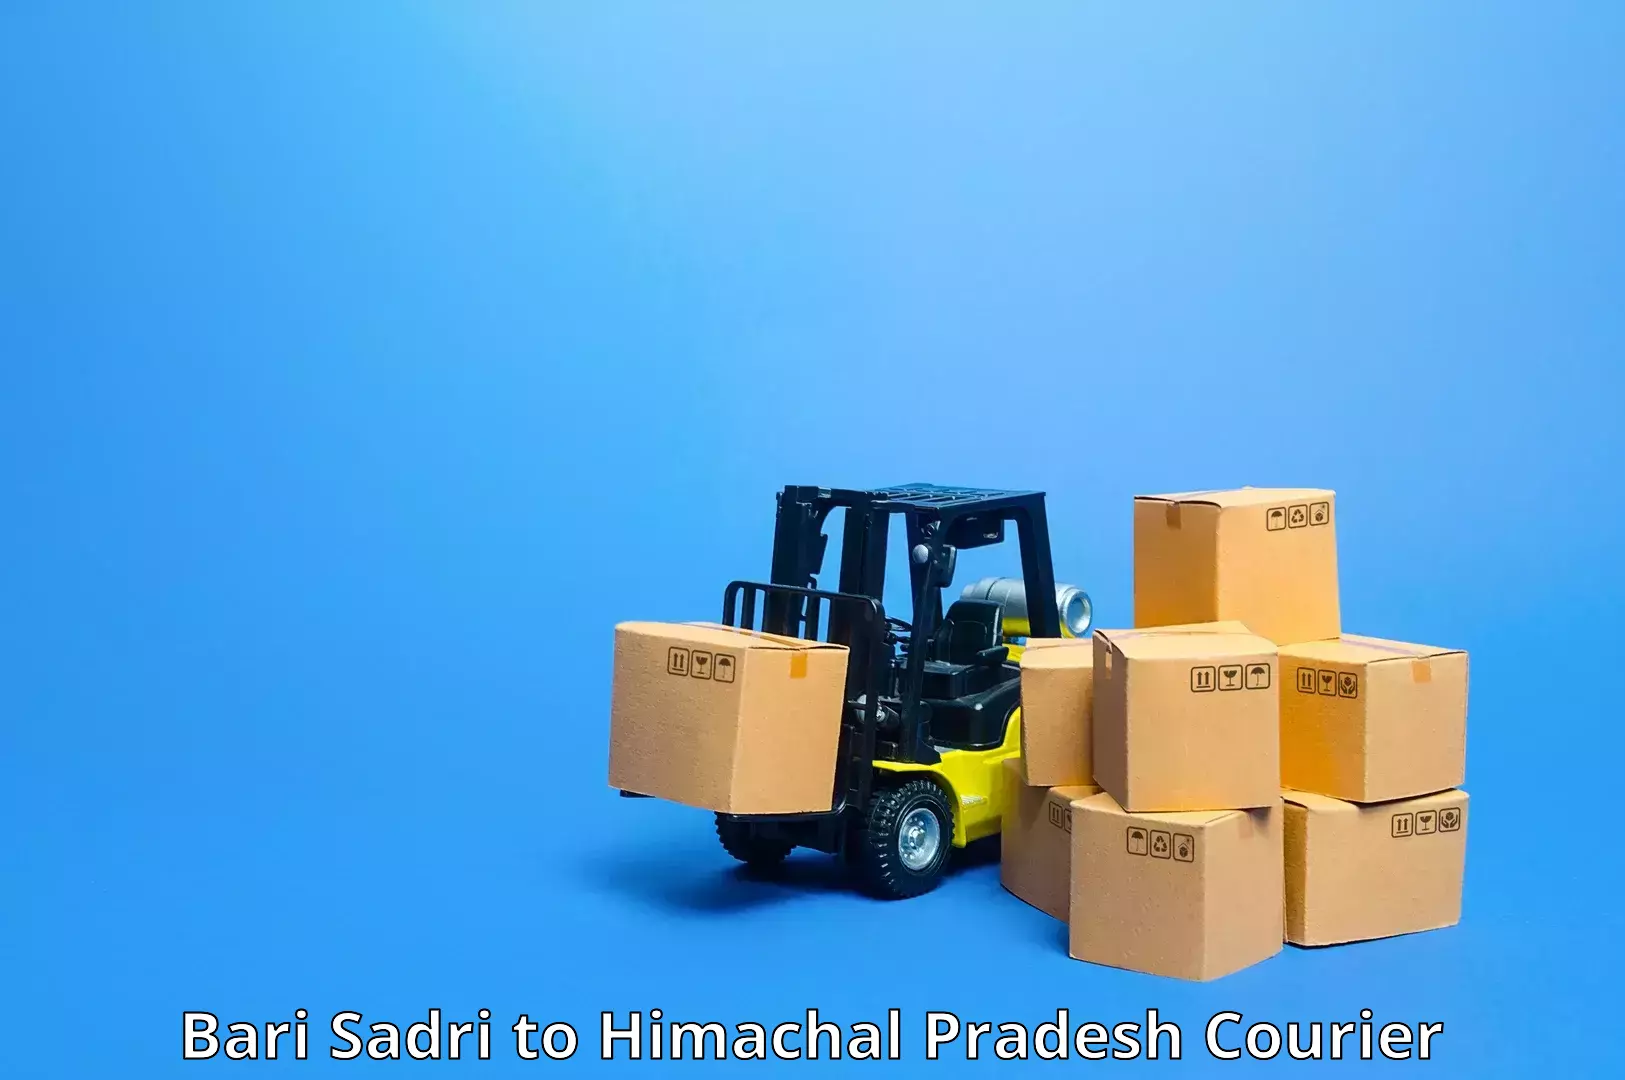 Flexible parcel services Bari Sadri to Joginder Nagar